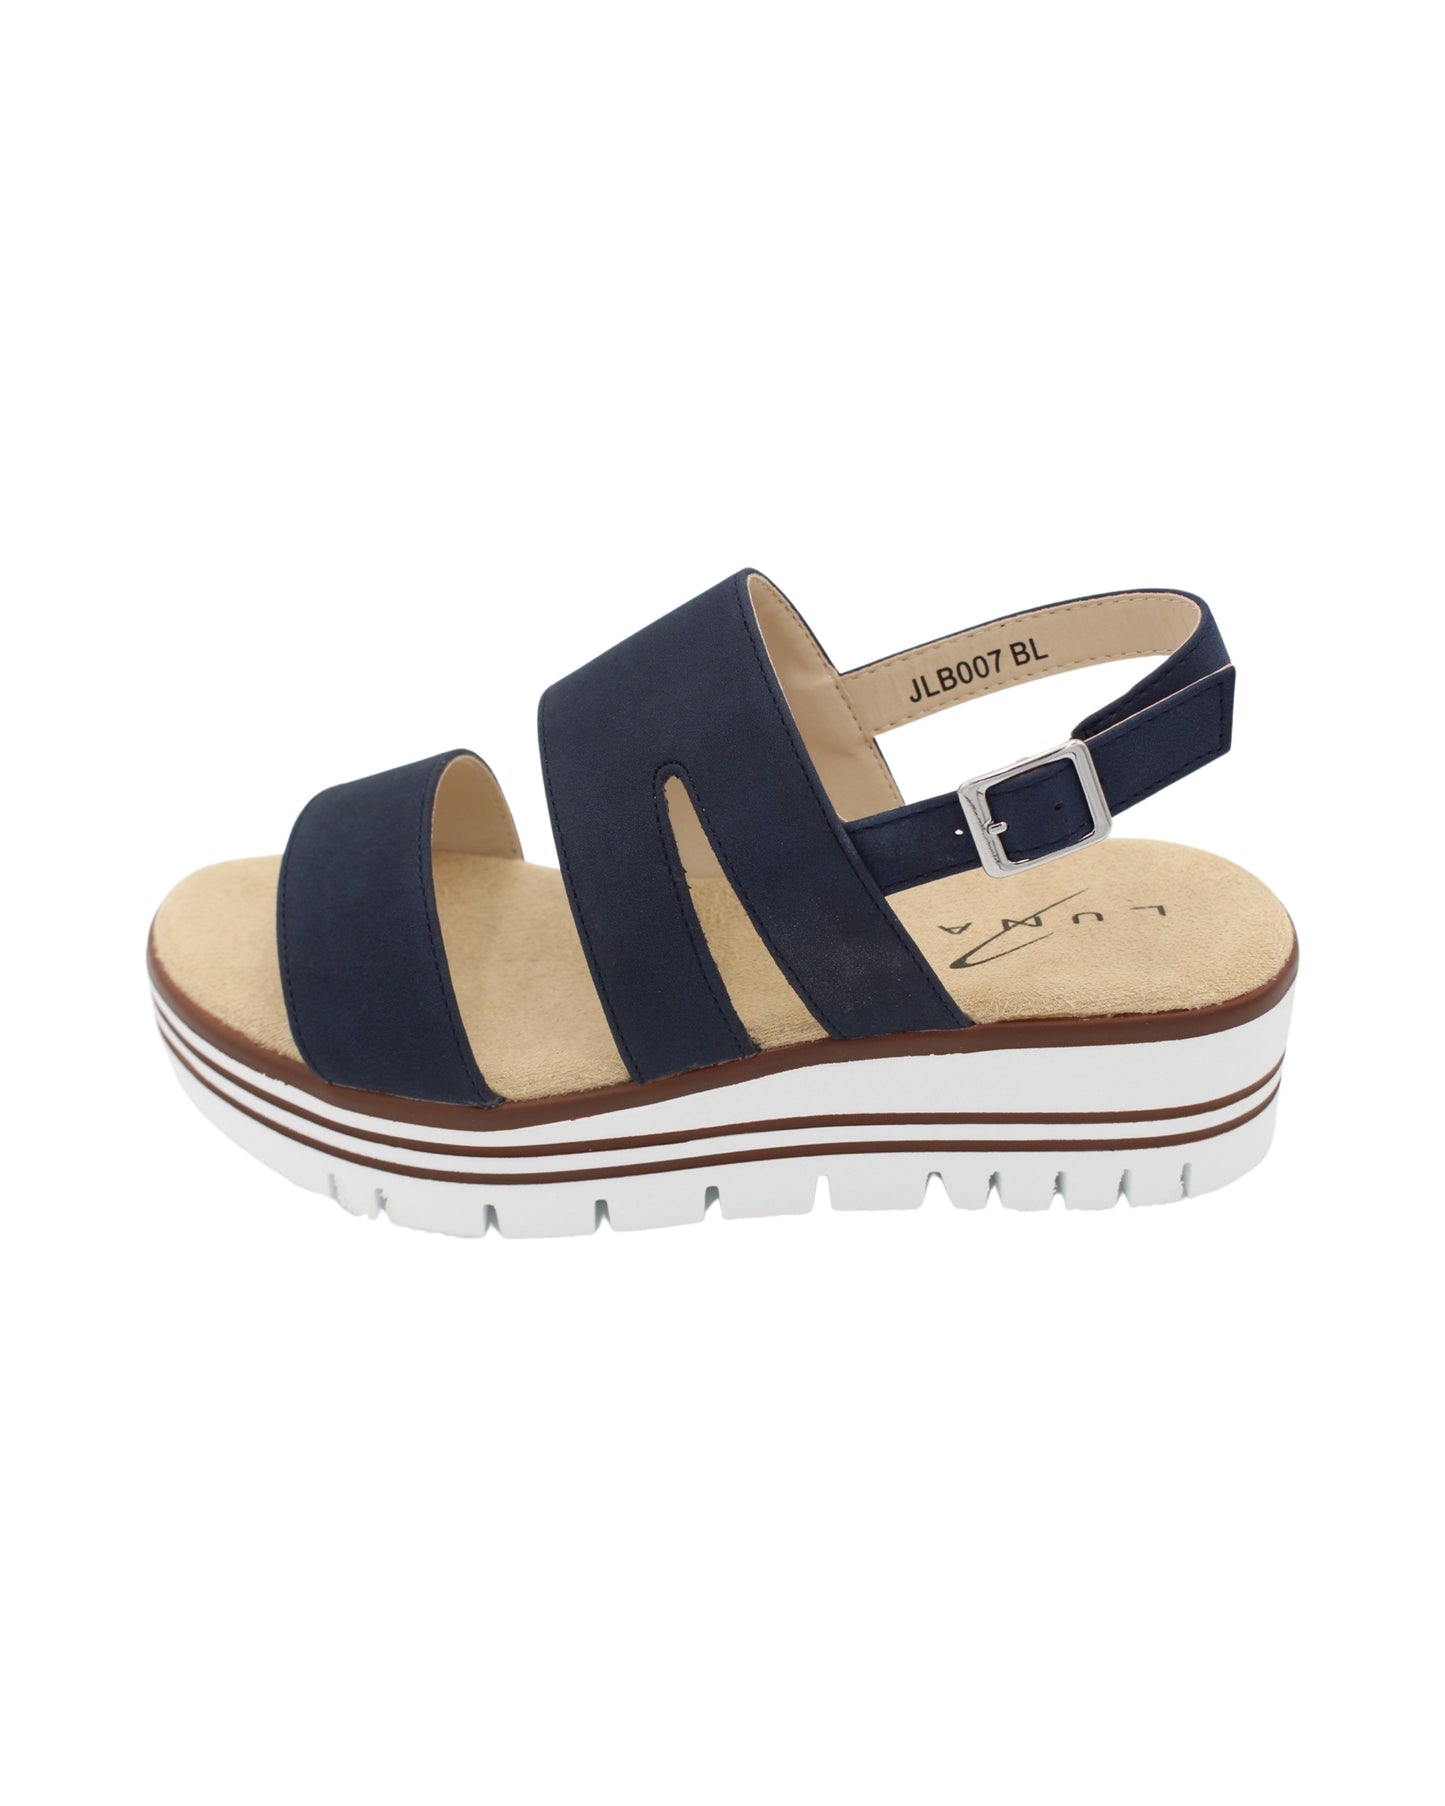 Lunar - Ladies Shoes Sandals Navy (2286)